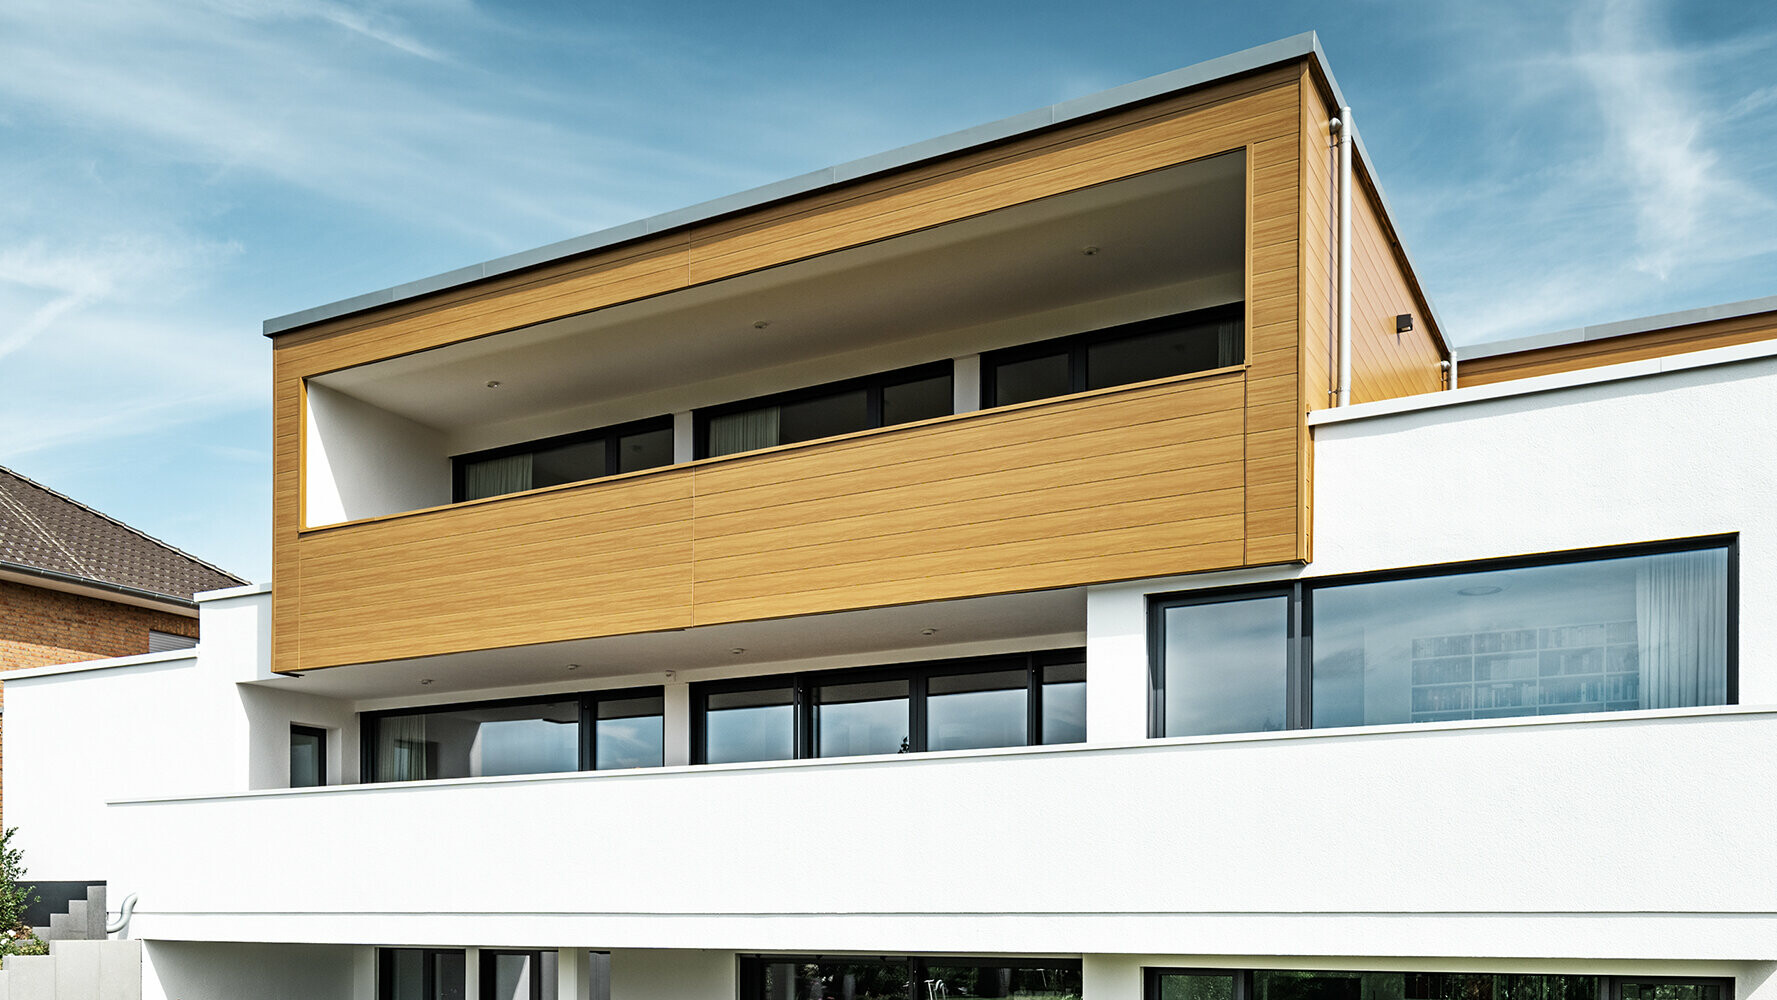 Moderní dům s arkýřem obloženým fasádními lamelami Siding PREFA v barvě šedého dubu.